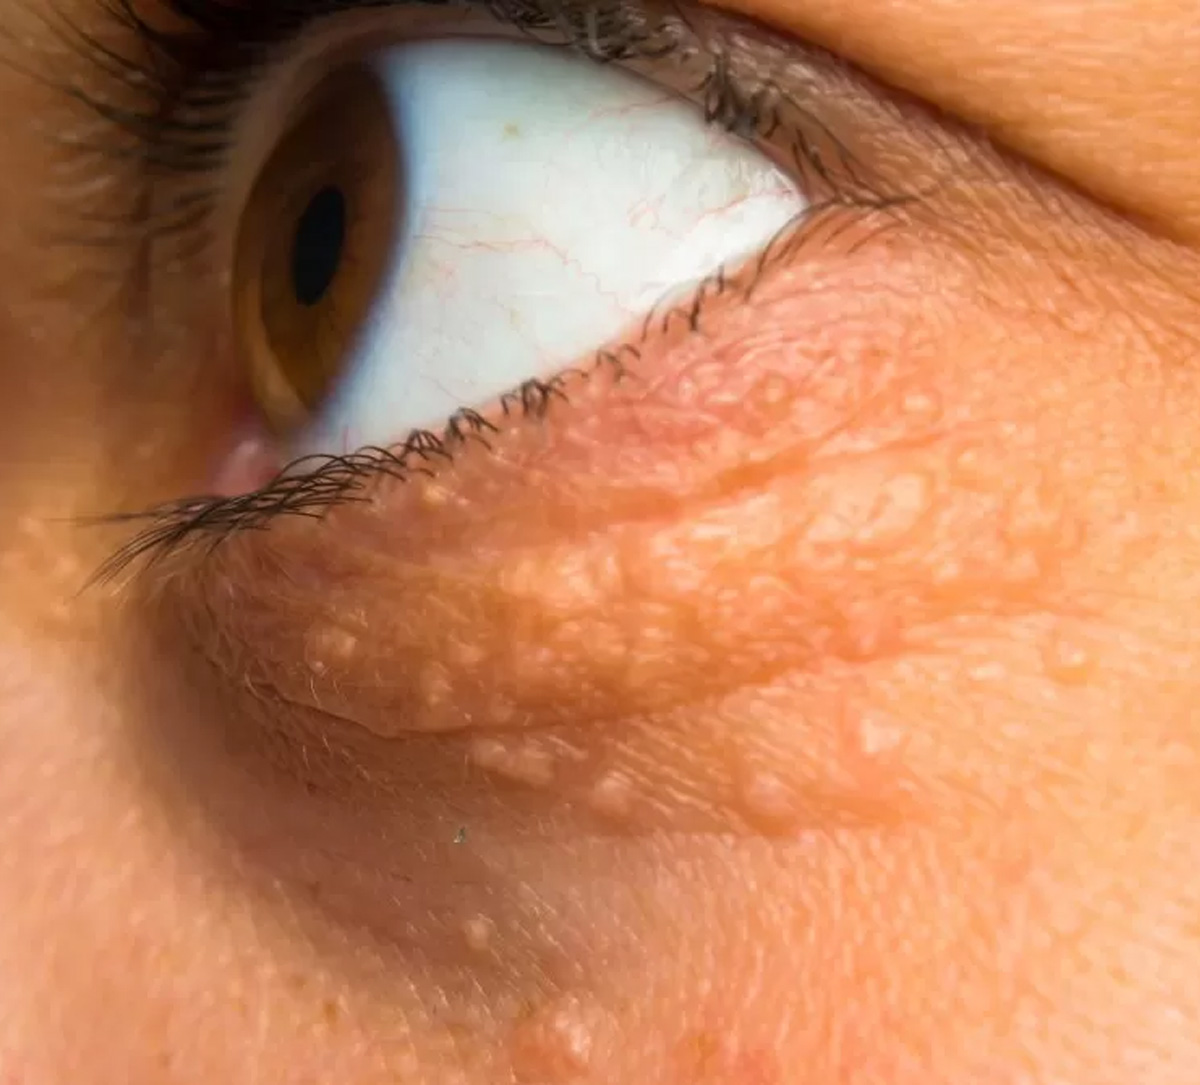 आंखों के आसपास दाने और त्वचा का रंग बदलना हो सकता है इस गंभीर बीमारी का संकेत